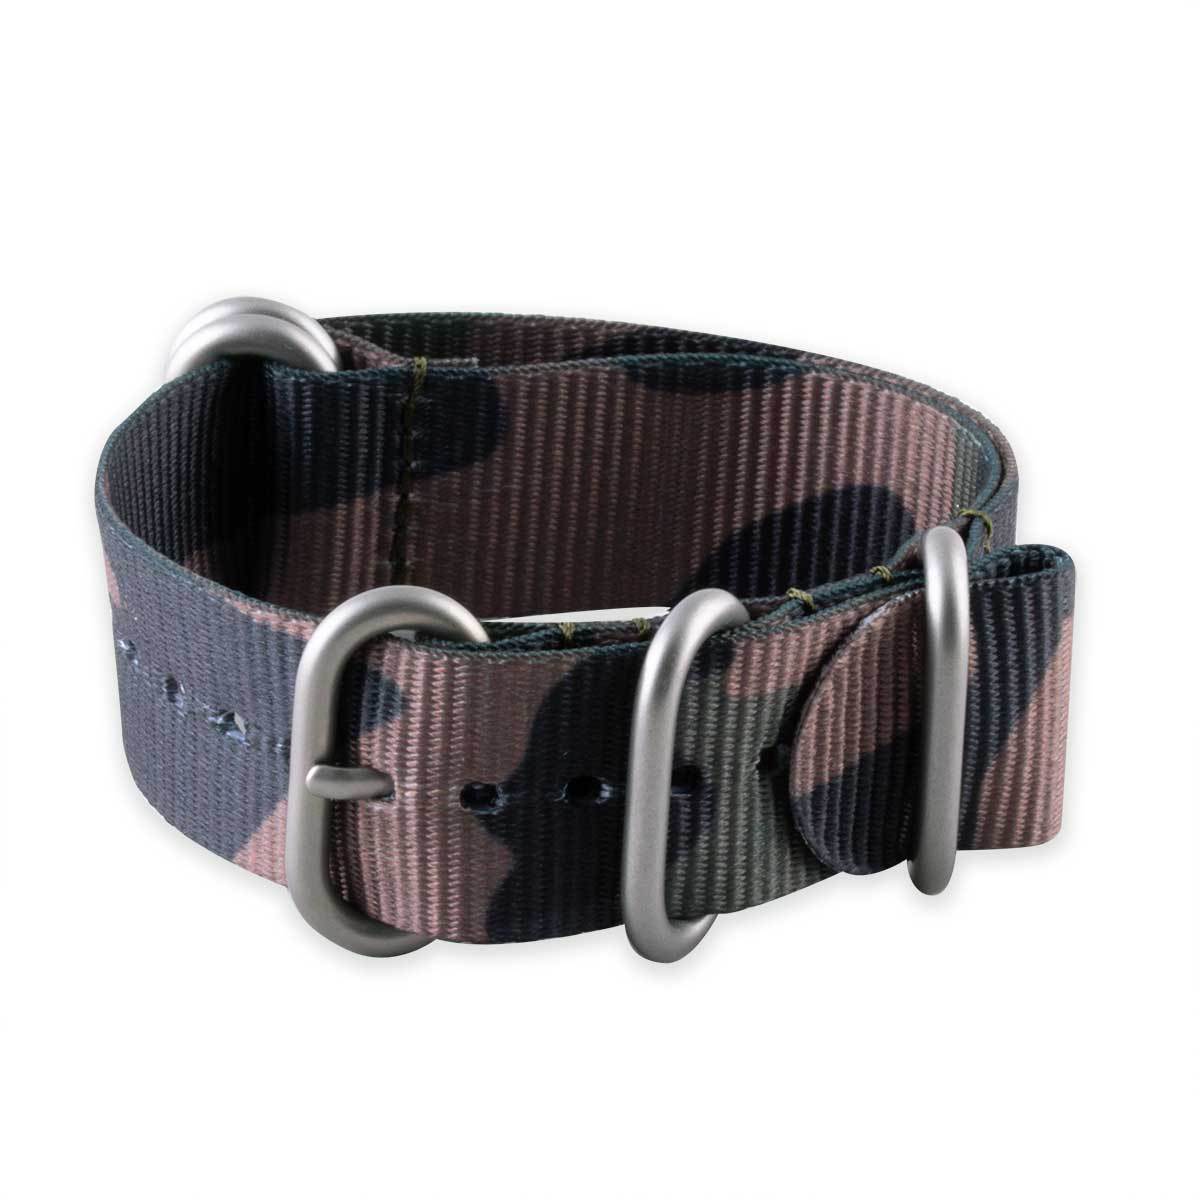 Bracelet montre Zulu 5 anneaux - Nylon / tissu Camo (marron, marron/vert, gris) - watch band leather strap - ABP Concept -